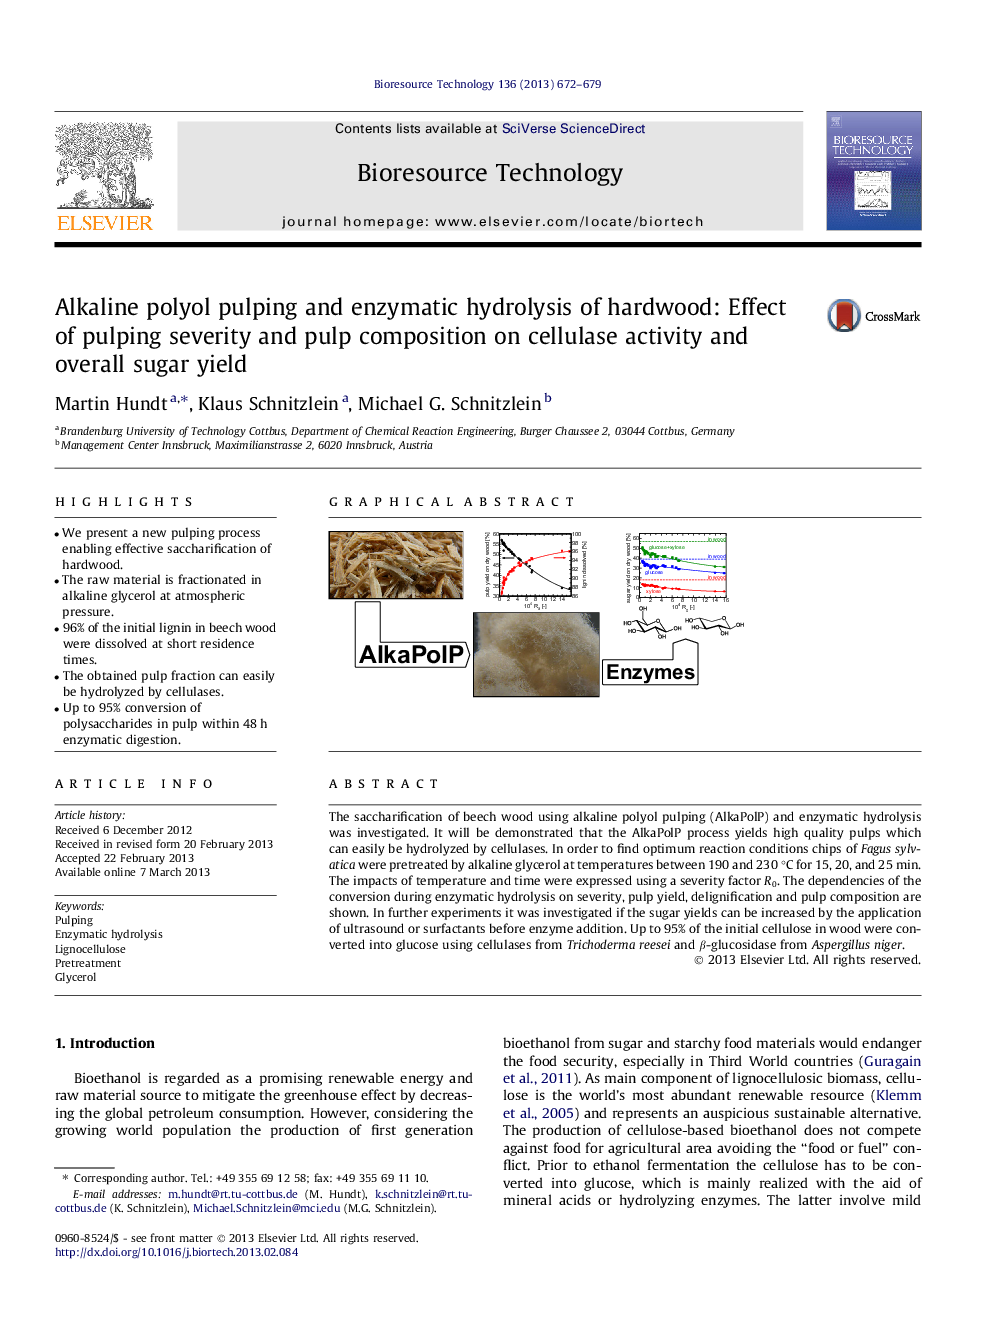 خمیر پالئولی قلیایی و هیدرولیز آنزیمی چوب سخت: اثر شدت خمیردندان و ترکیب خمیر در فعالیت سلولاز و عملکرد کل قند 